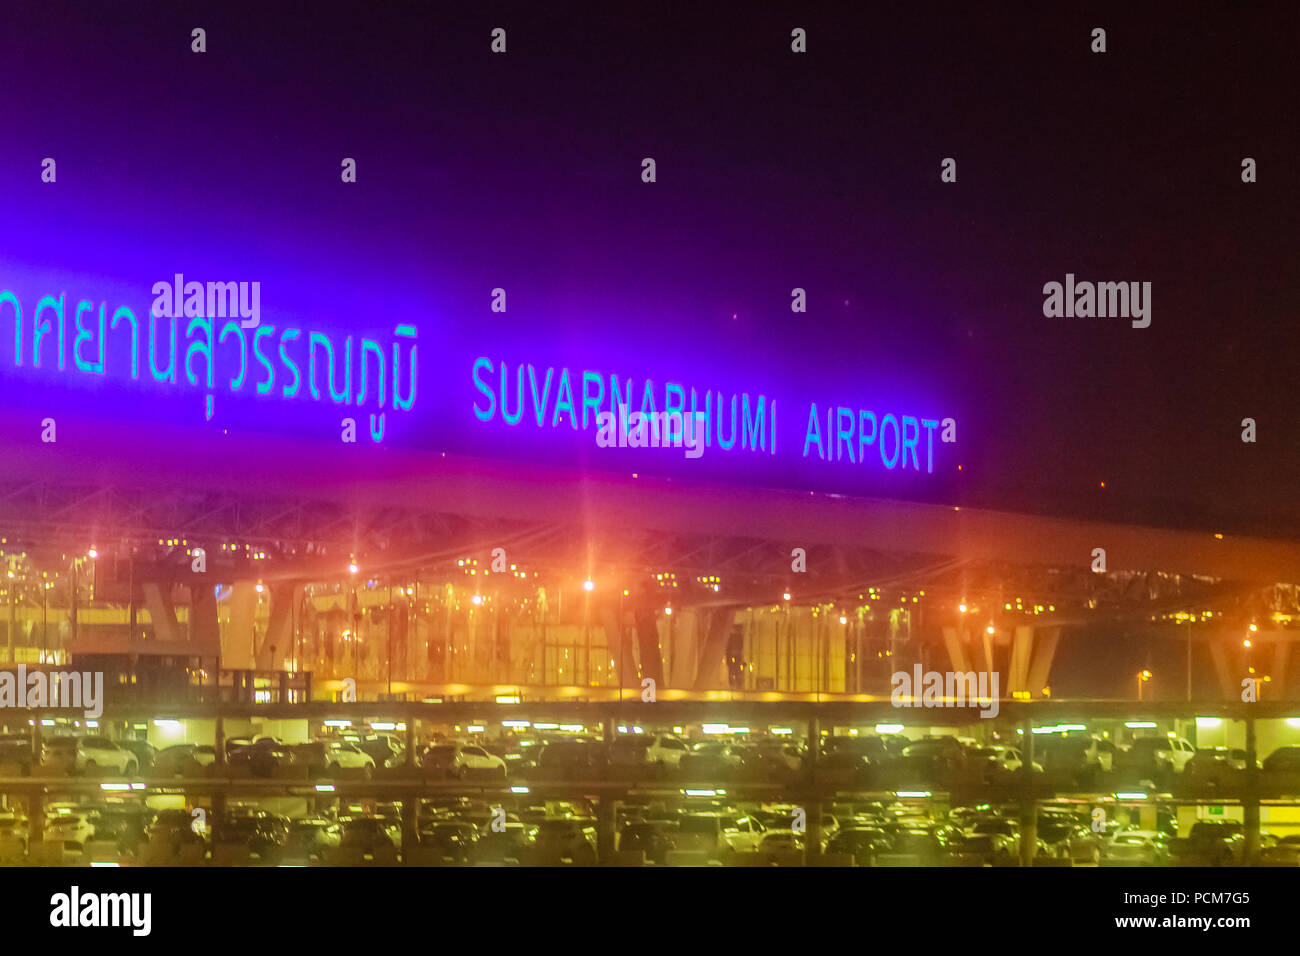 Suvarnabhumi Airport Exterior Stock Photos & Suvarnabhumi